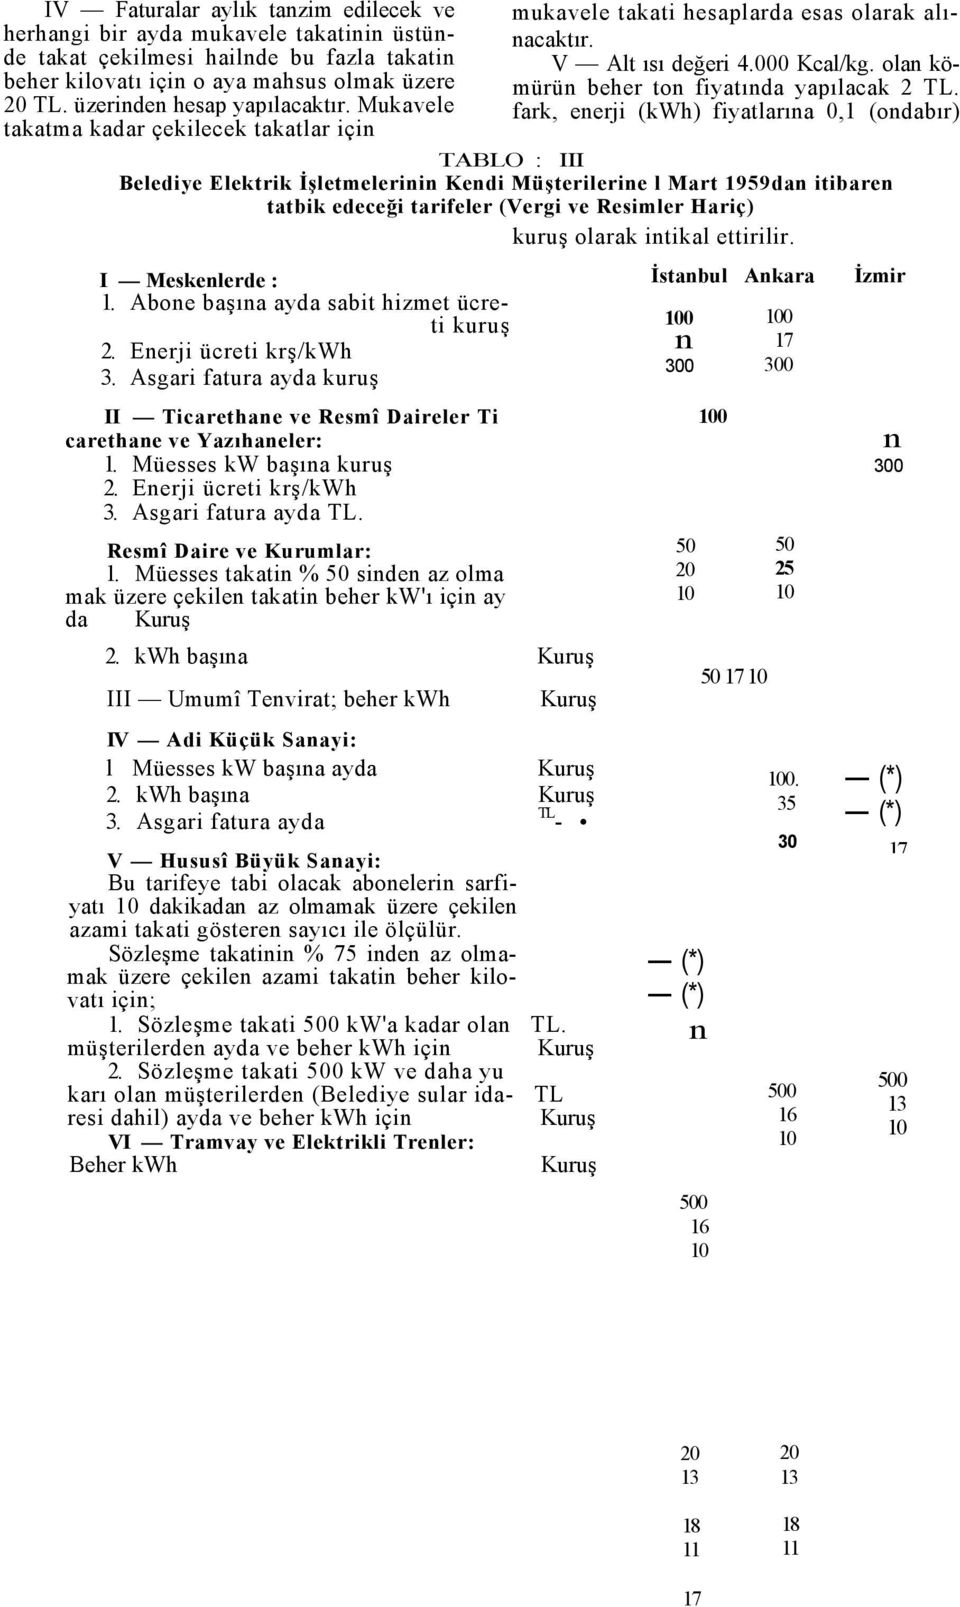 fark, eerji (kwh) fiyatlarıa 0,1 (odabır) TABLO : III Belediye Elektrik İşletmelerii Kedi Müşterilerie l Mart 1959da itibare tatbik edeceği tarifeler (Vergi ve Resimler Hariç) kuruş olarak itikal